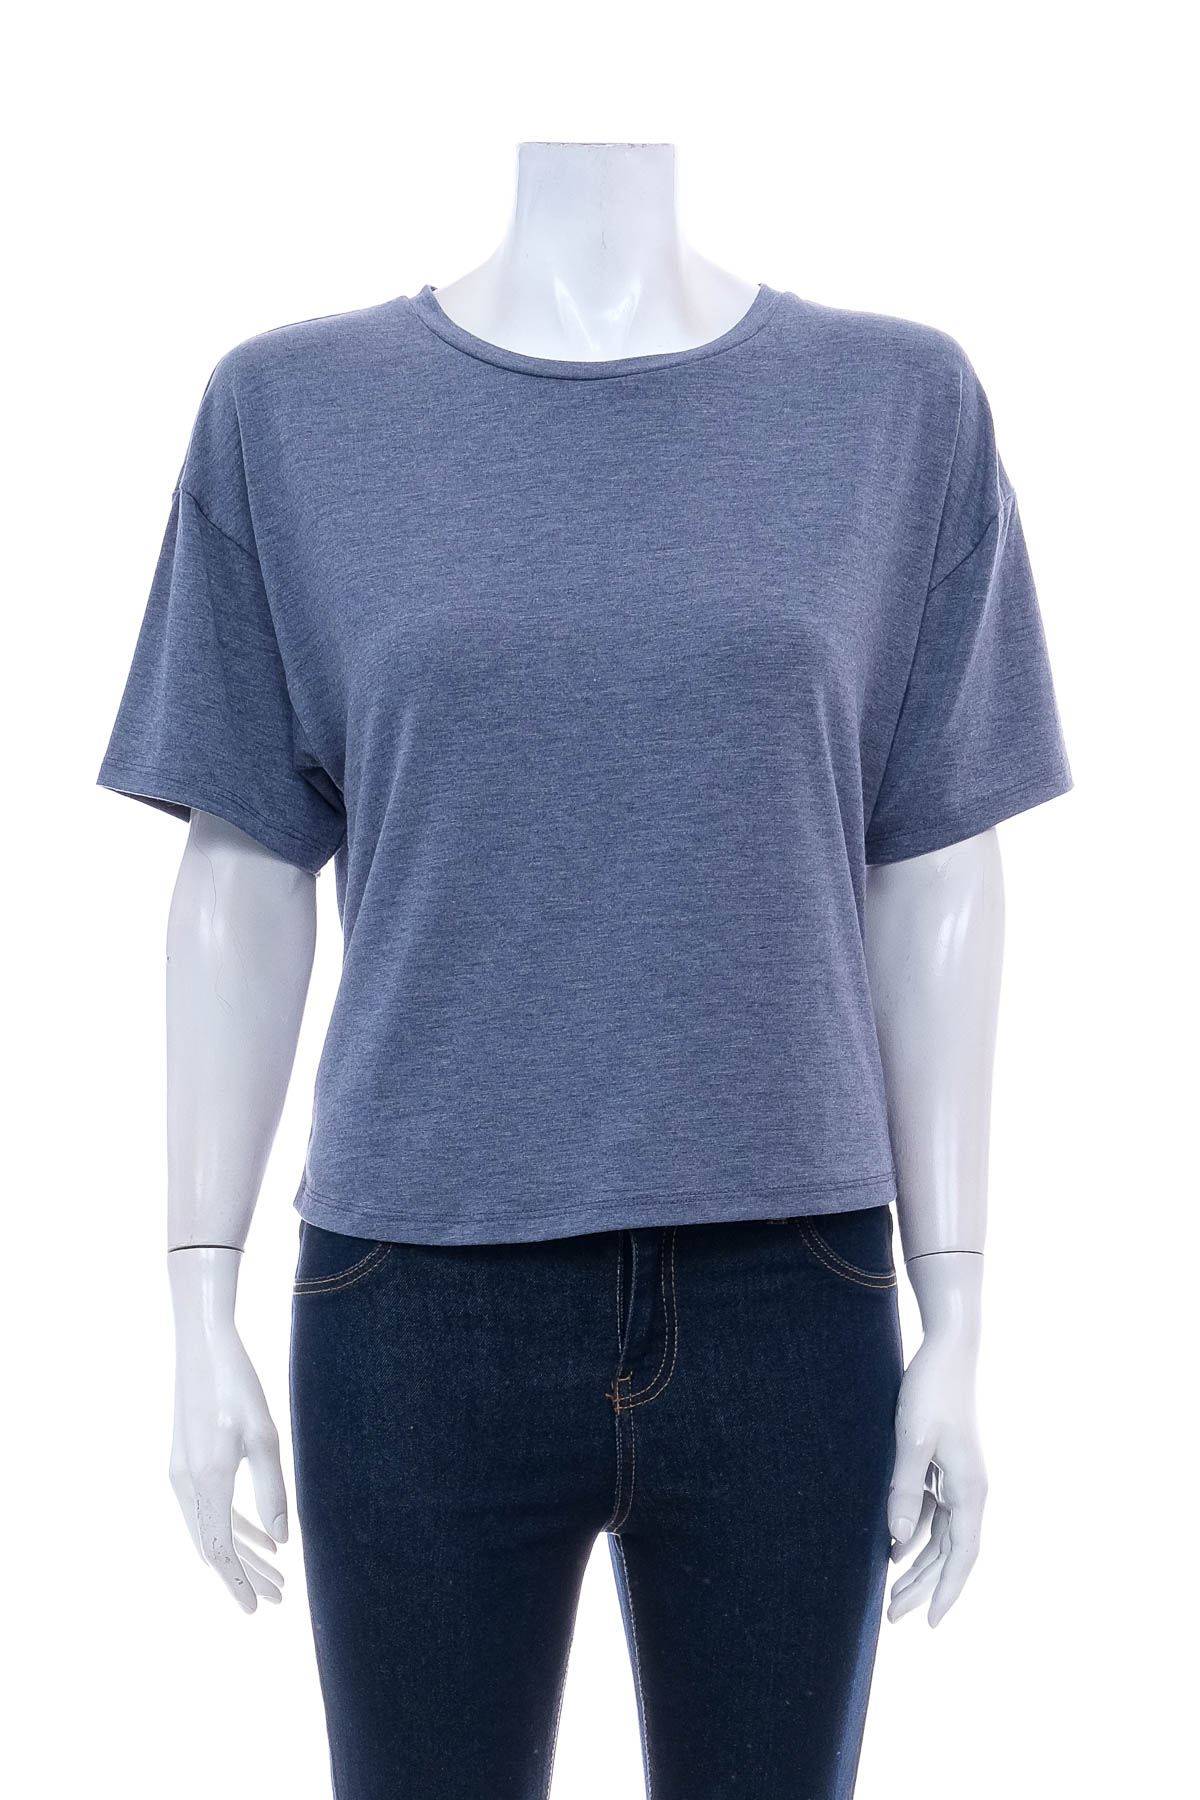 Women's t-shirt - ANNA FIELD - 0